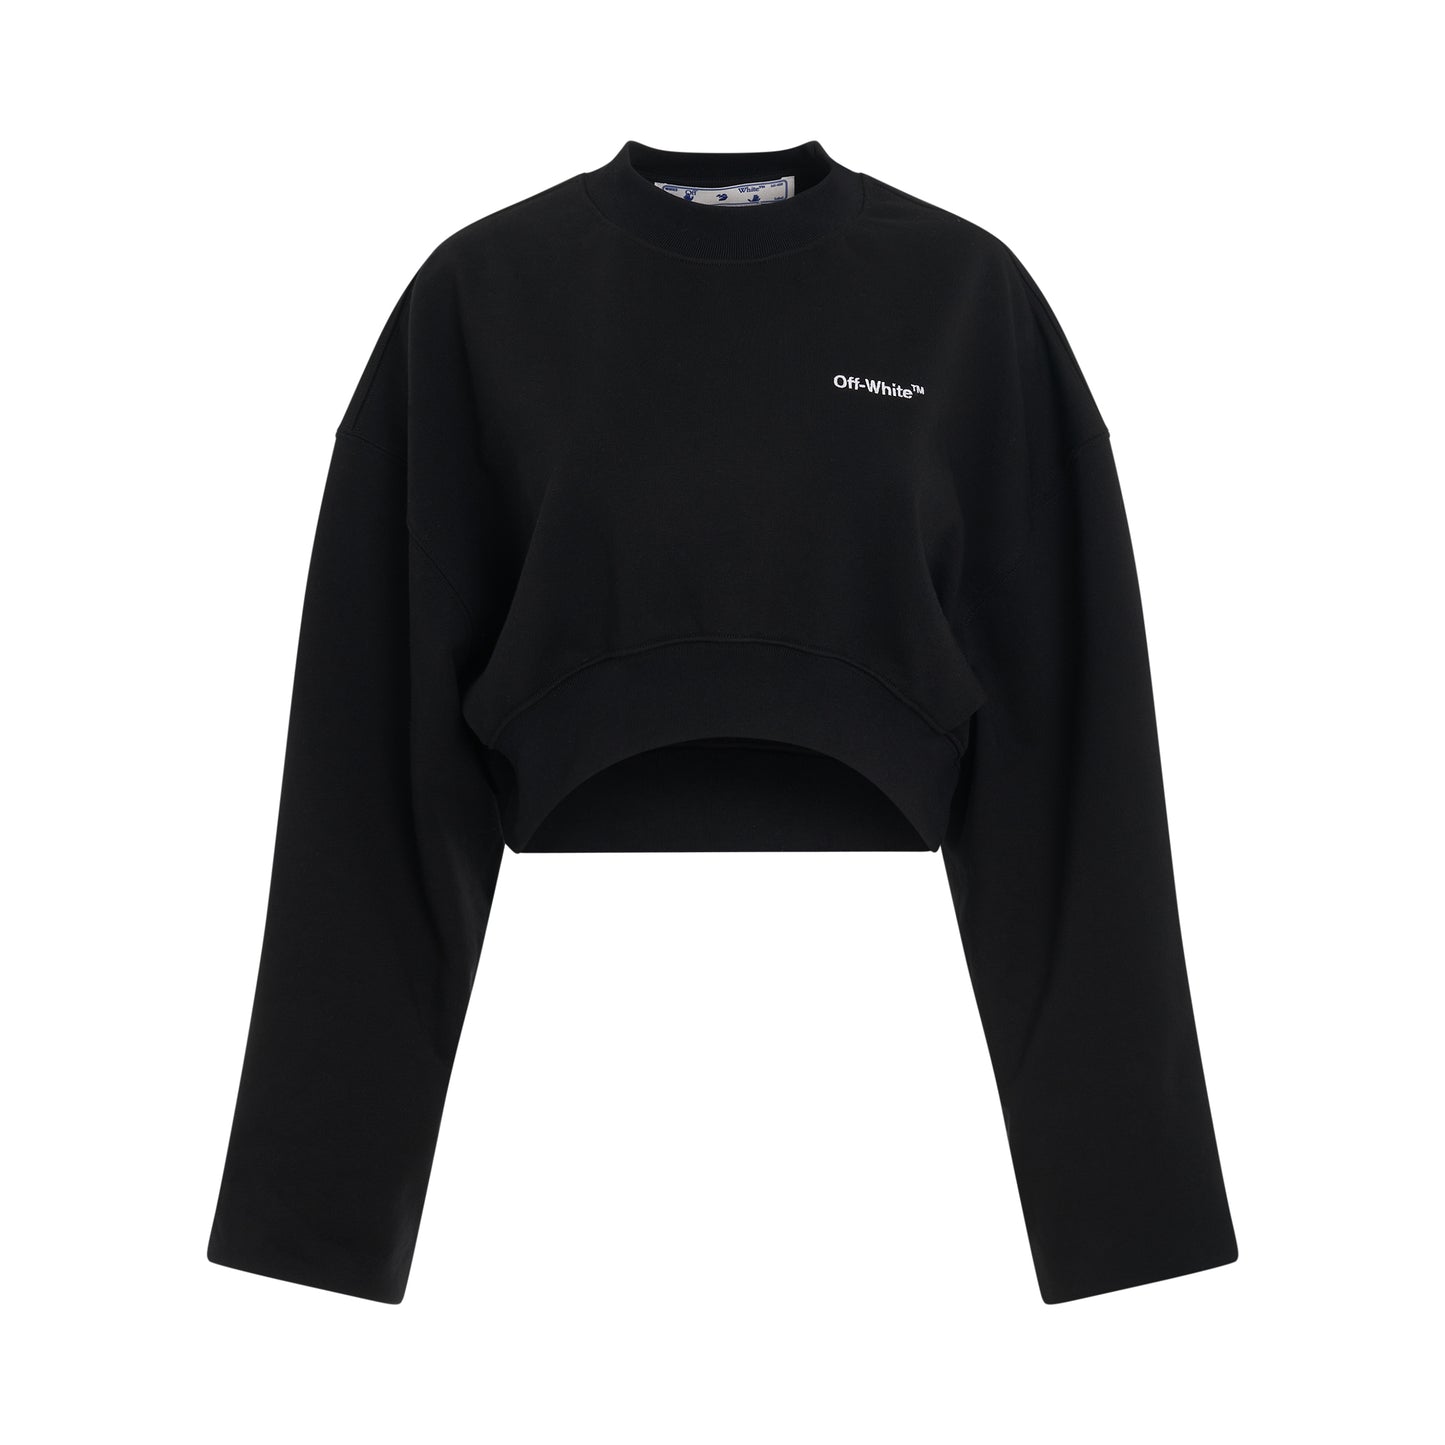 For All Helvetica Crop Oversize Crewneck Sweatshirt in Black/White